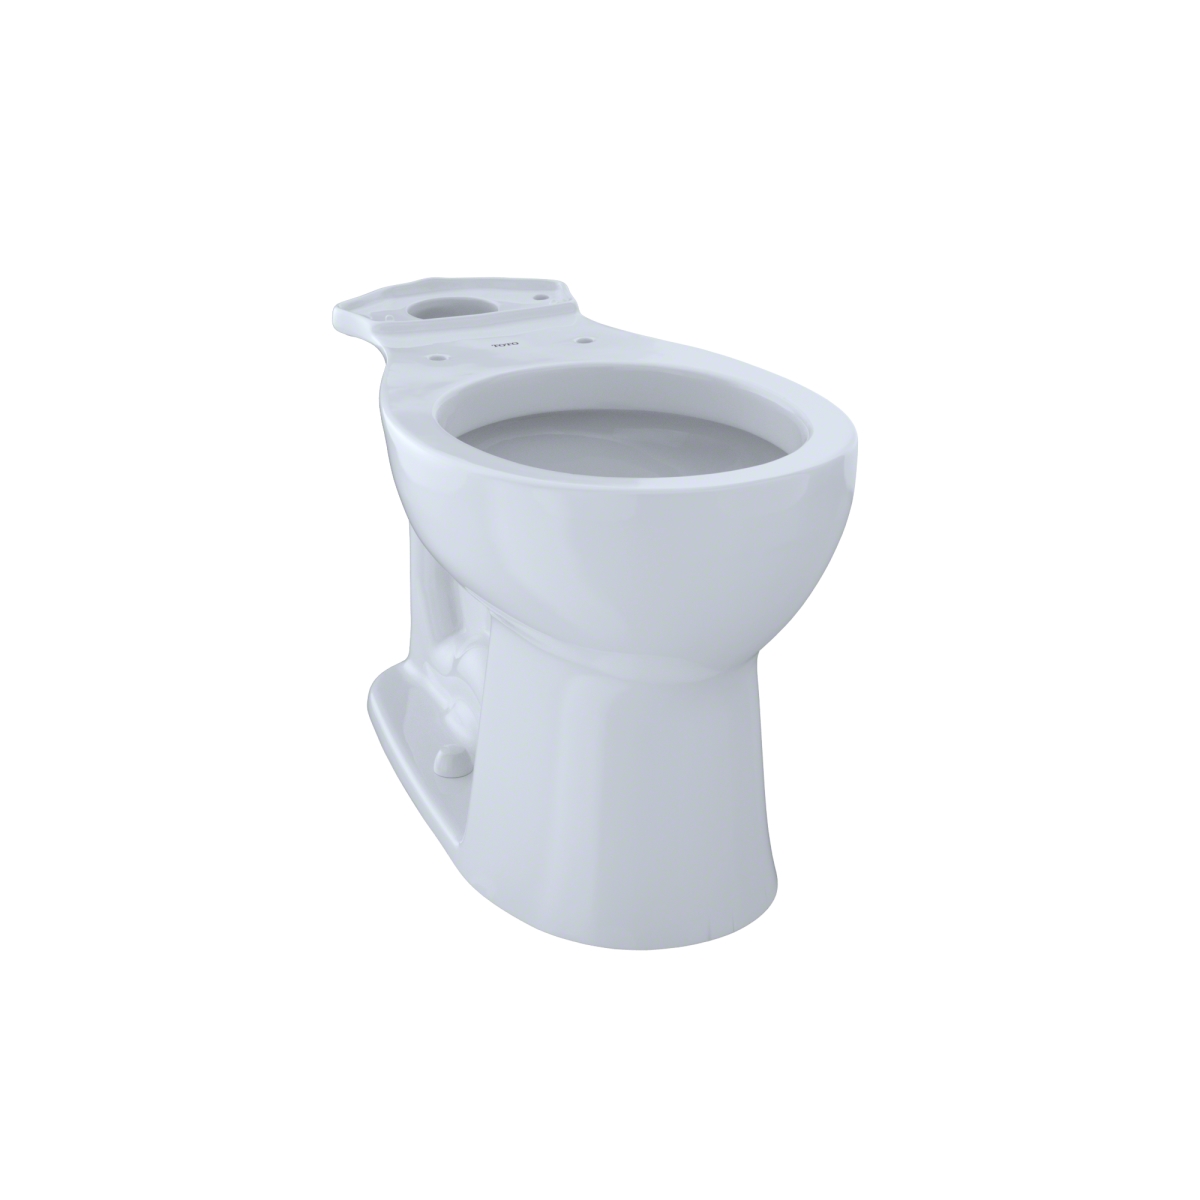 C243ef No.01 Entrada Universal Height Round Toilet Bowl, Cotton White